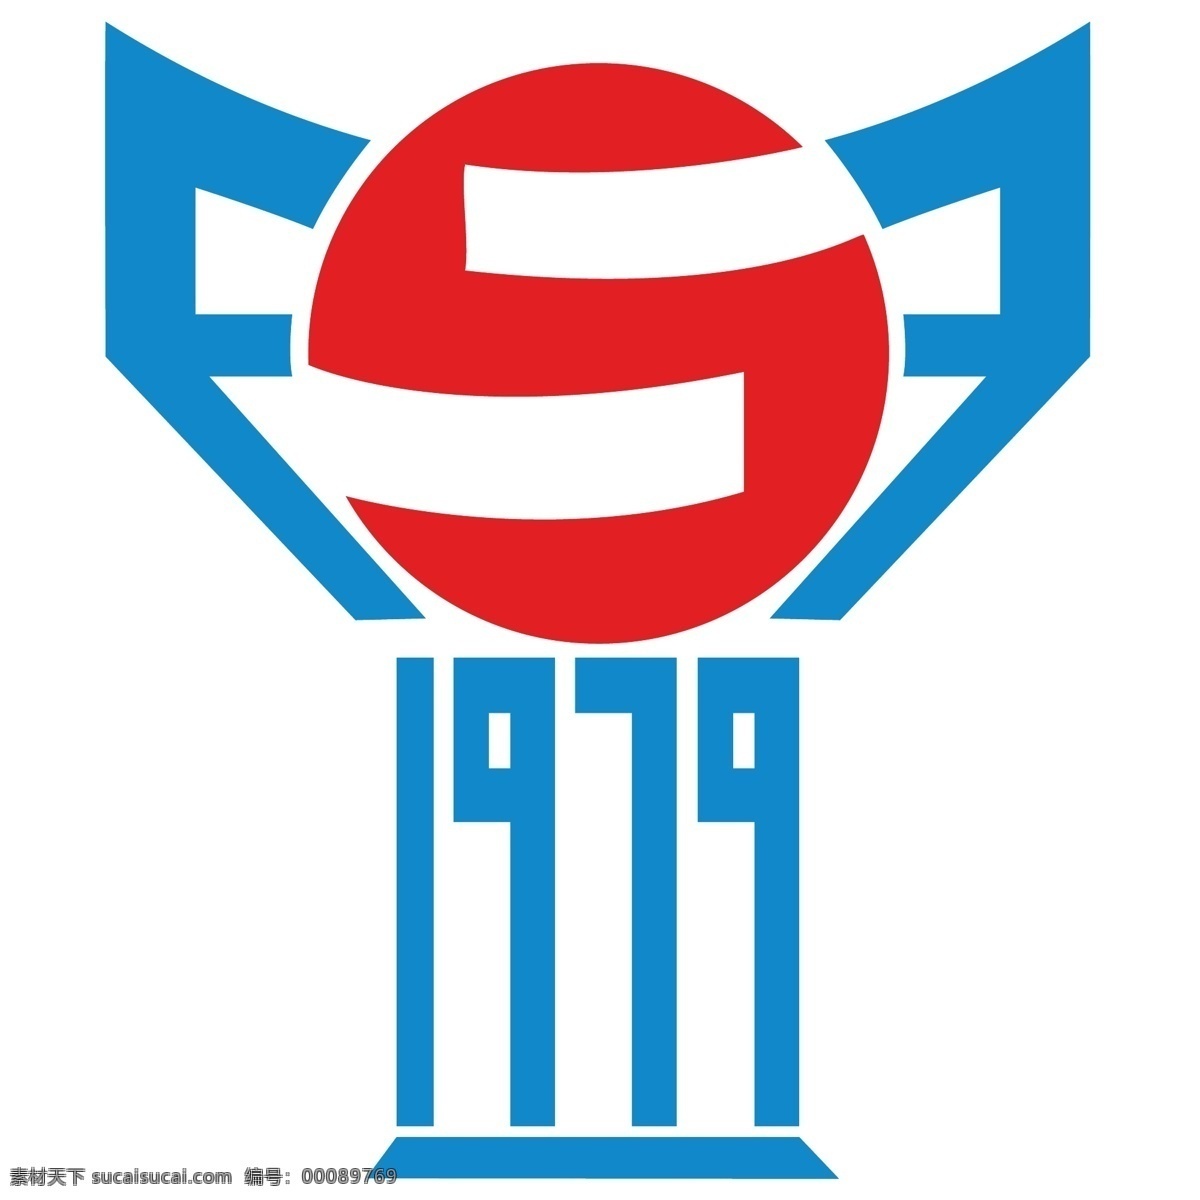 法罗群岛 足球 协会 标识 公司 免费 品牌 品牌标识 商标 矢量标志下载 免费矢量标识 矢量 psd源文件 logo设计